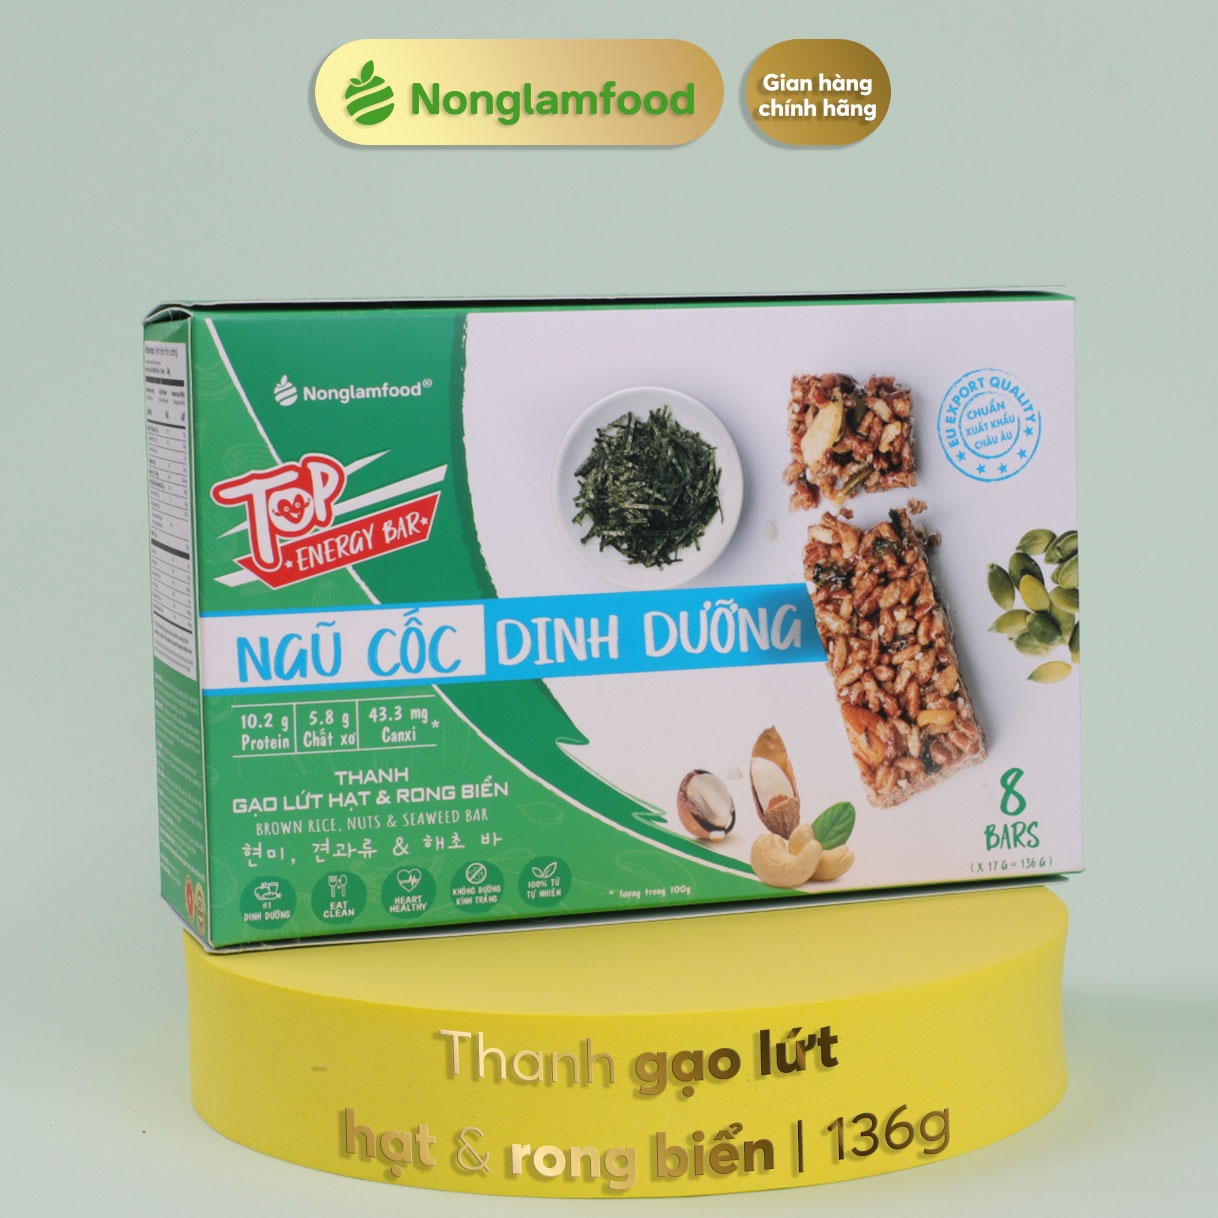 [THUẦN CHAY]Thanh gạo lứt Hạt & Rong Biển Nonglamfood hộp 8 thanh 136g | Chay mặn đều dùng được | Hỗ trợ ăn kiêng giảm cân | Bữa ăn dinh dưỡng thay thế lành mạnh